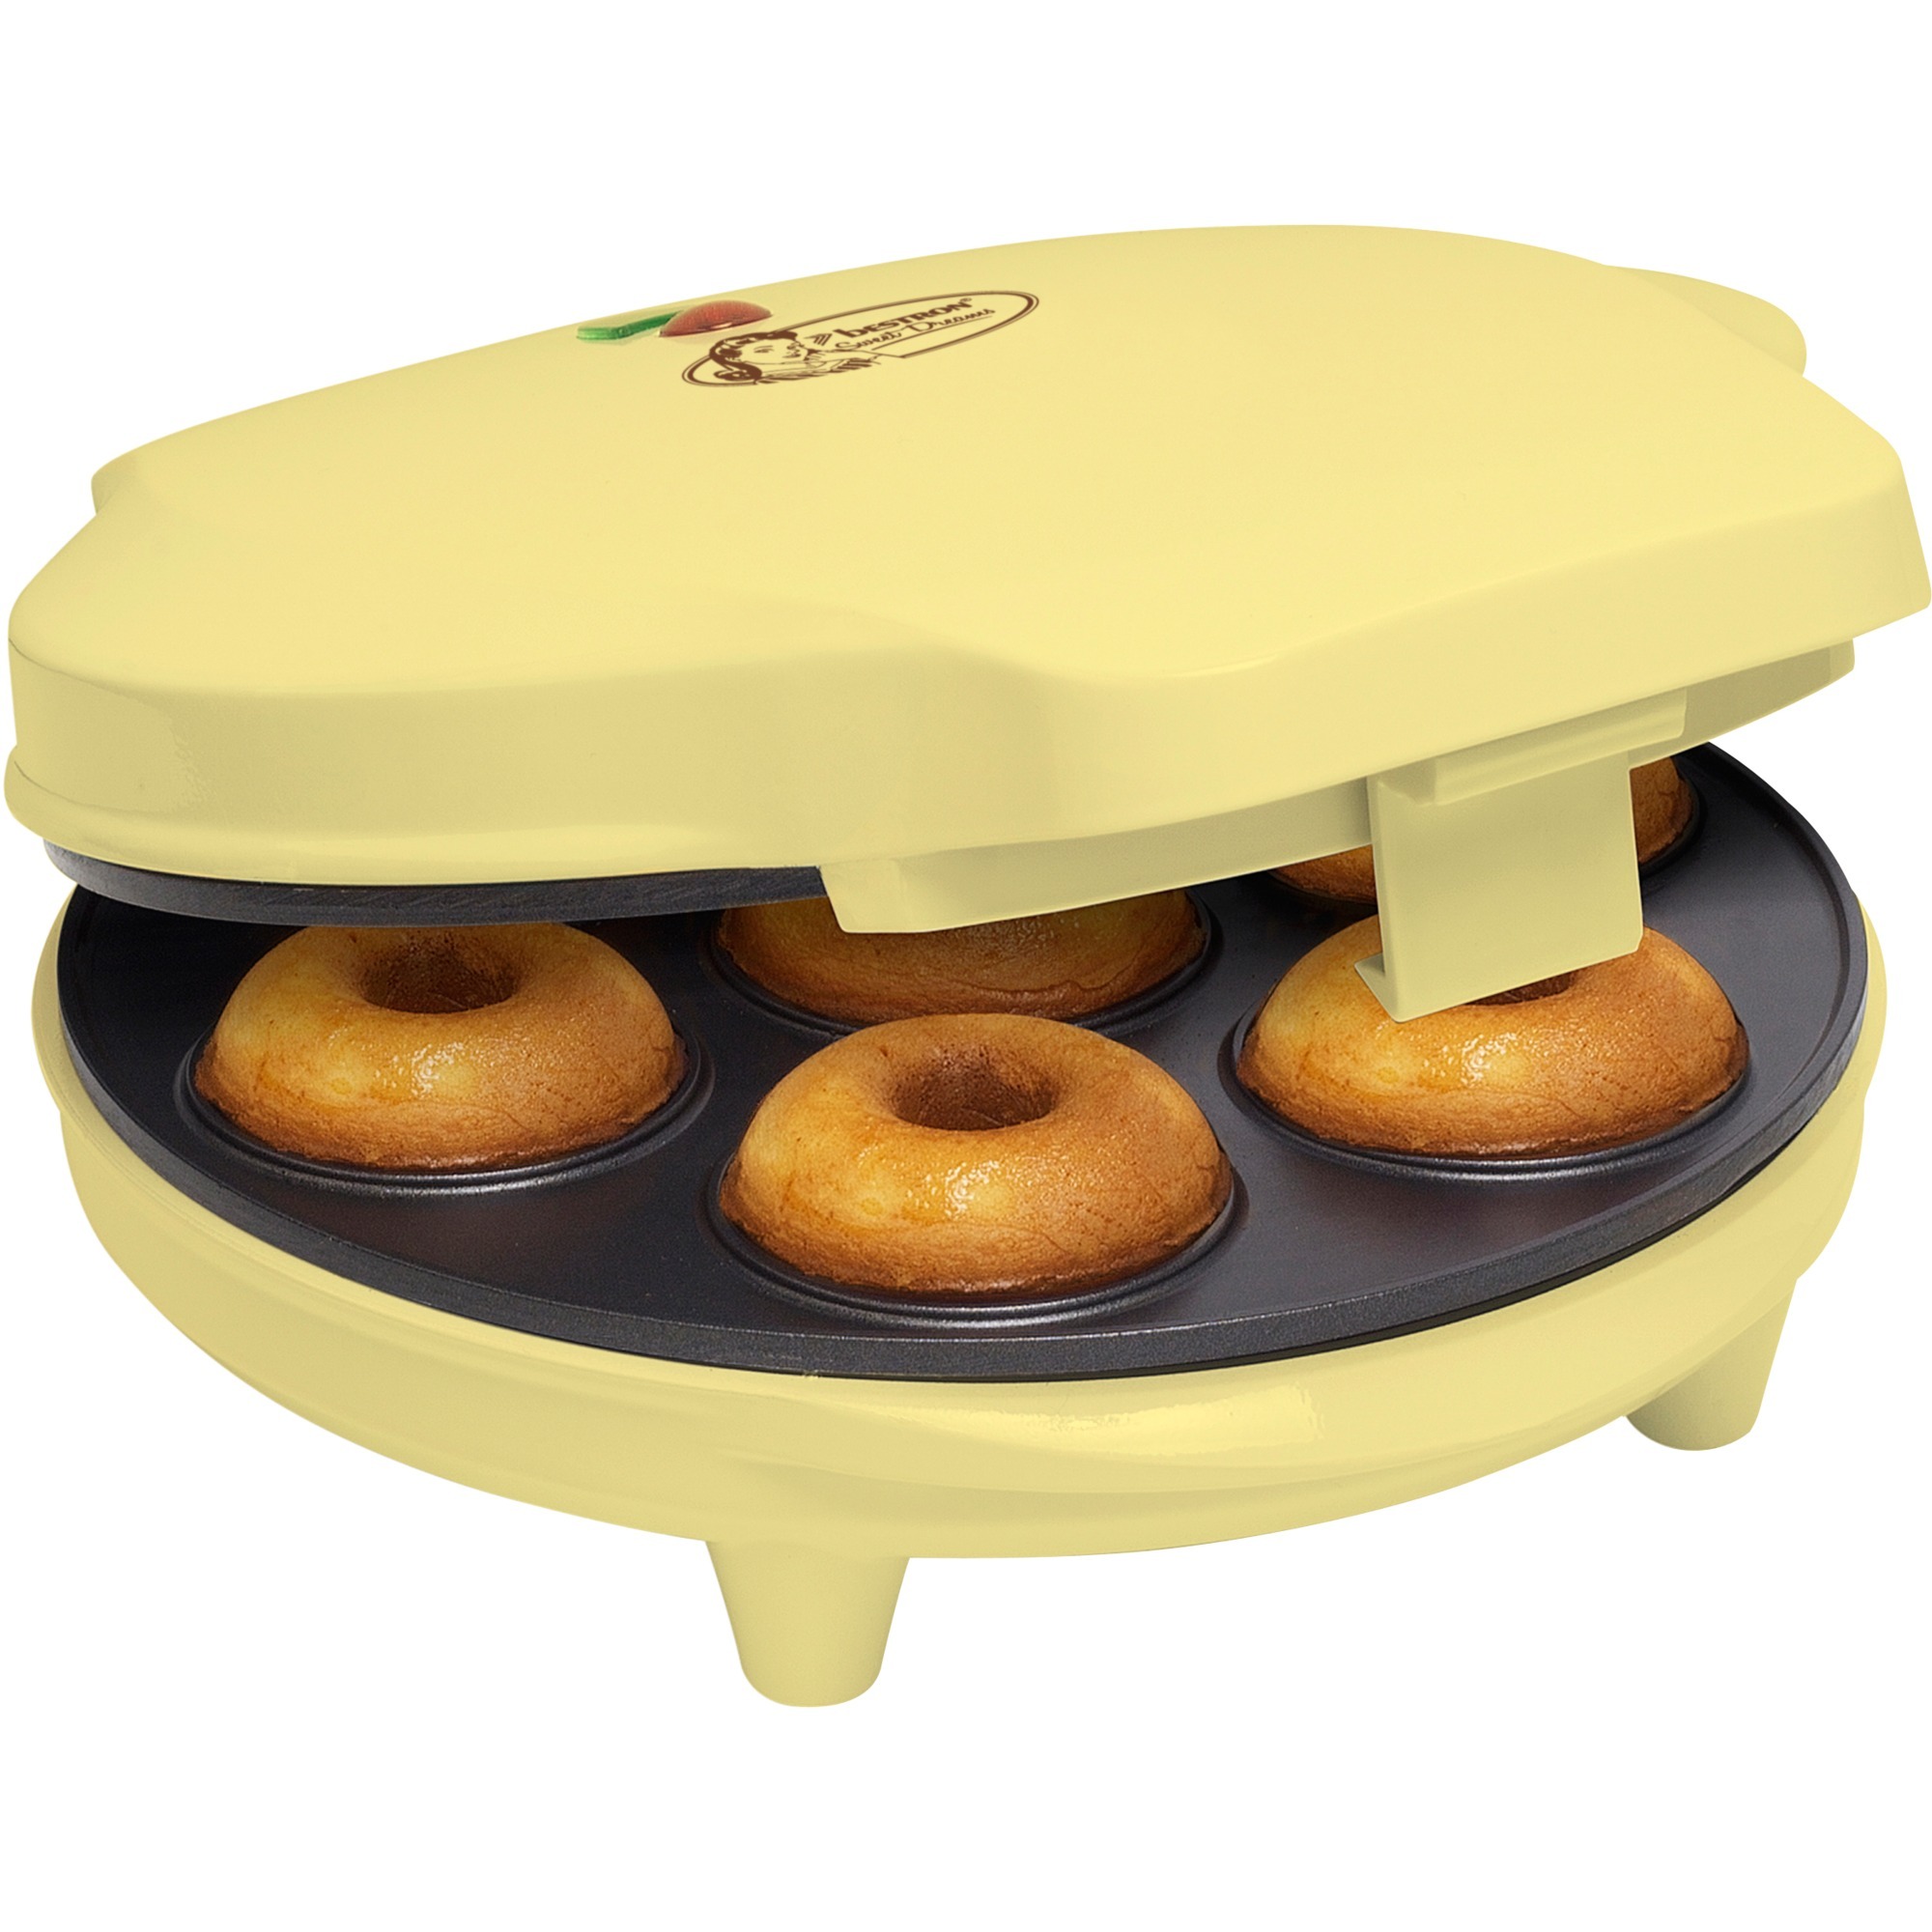 Image of Alternate - Donutmaker online einkaufen bei Alternate